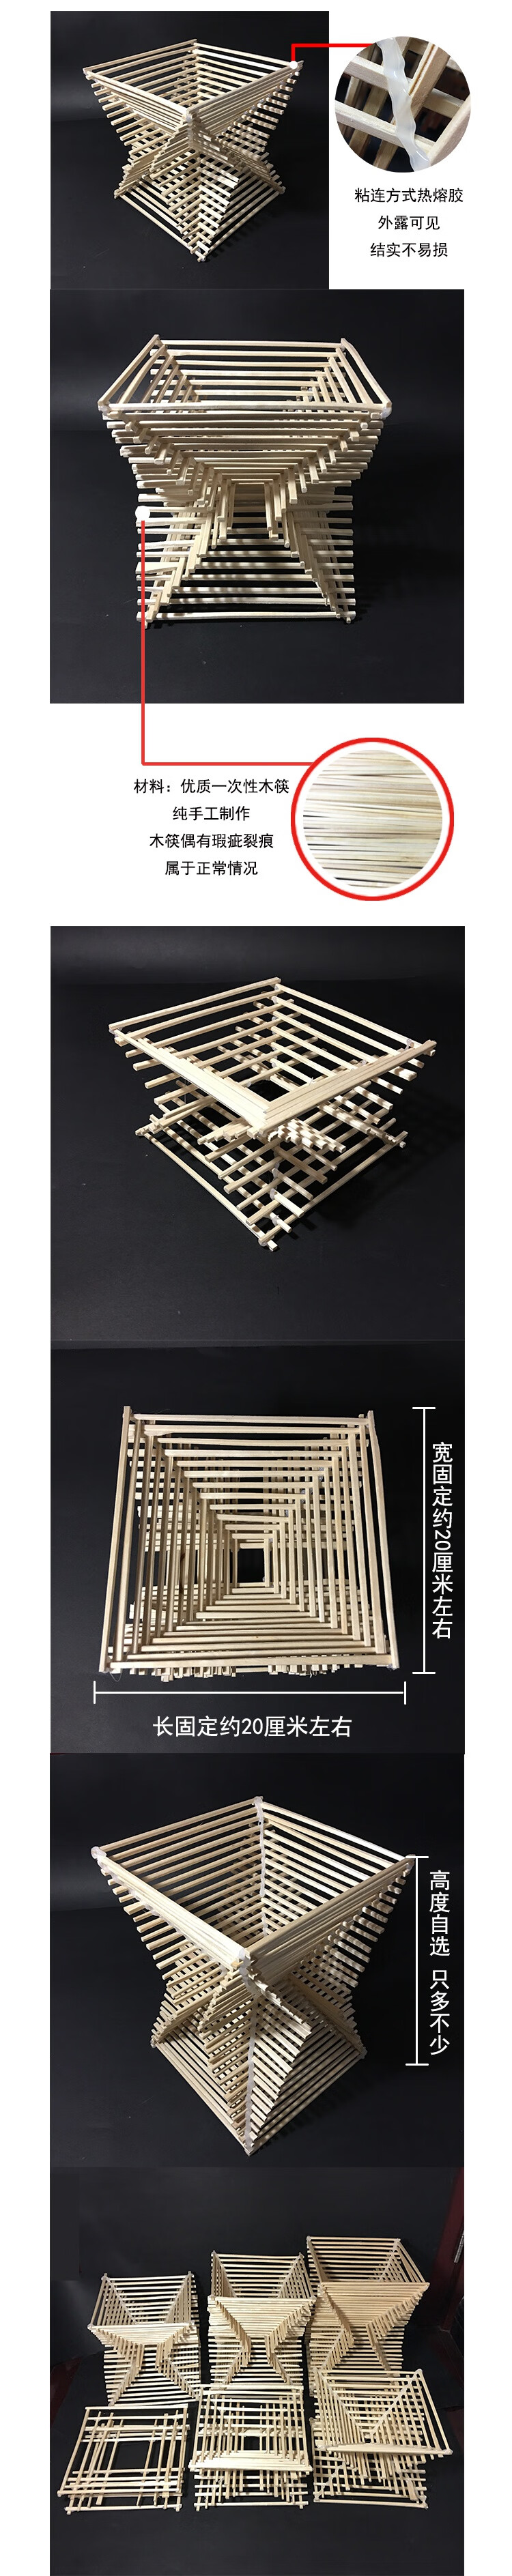 立体构成作品成品作业材料包成品手工模型木条木筷灯罩设计拼装材料